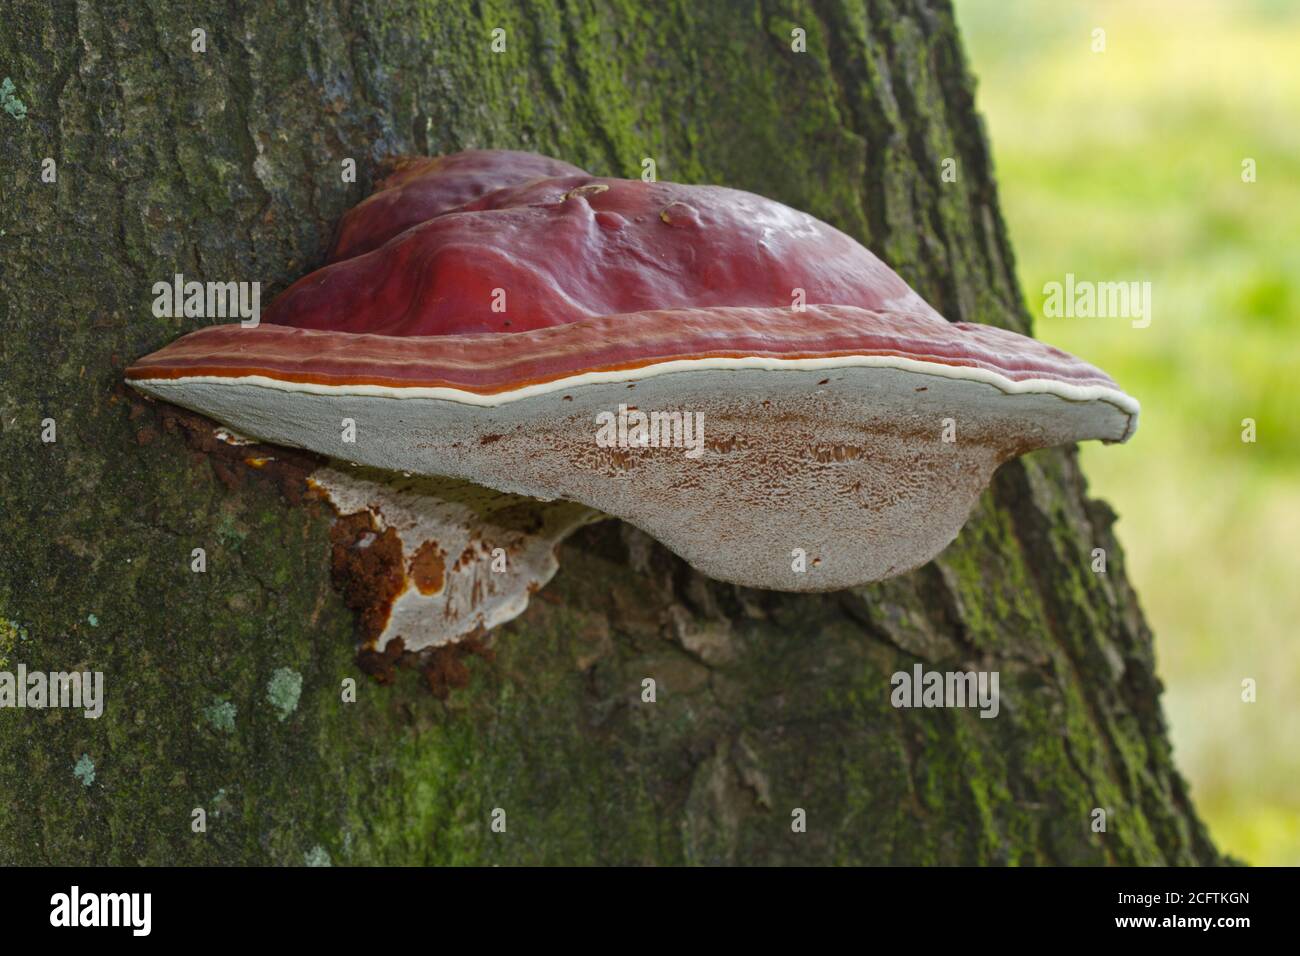 Hermoso cuerpo de frutos de color marrón rojizo de Ganoderma lucidum sobre un roble árbol Foto de stock